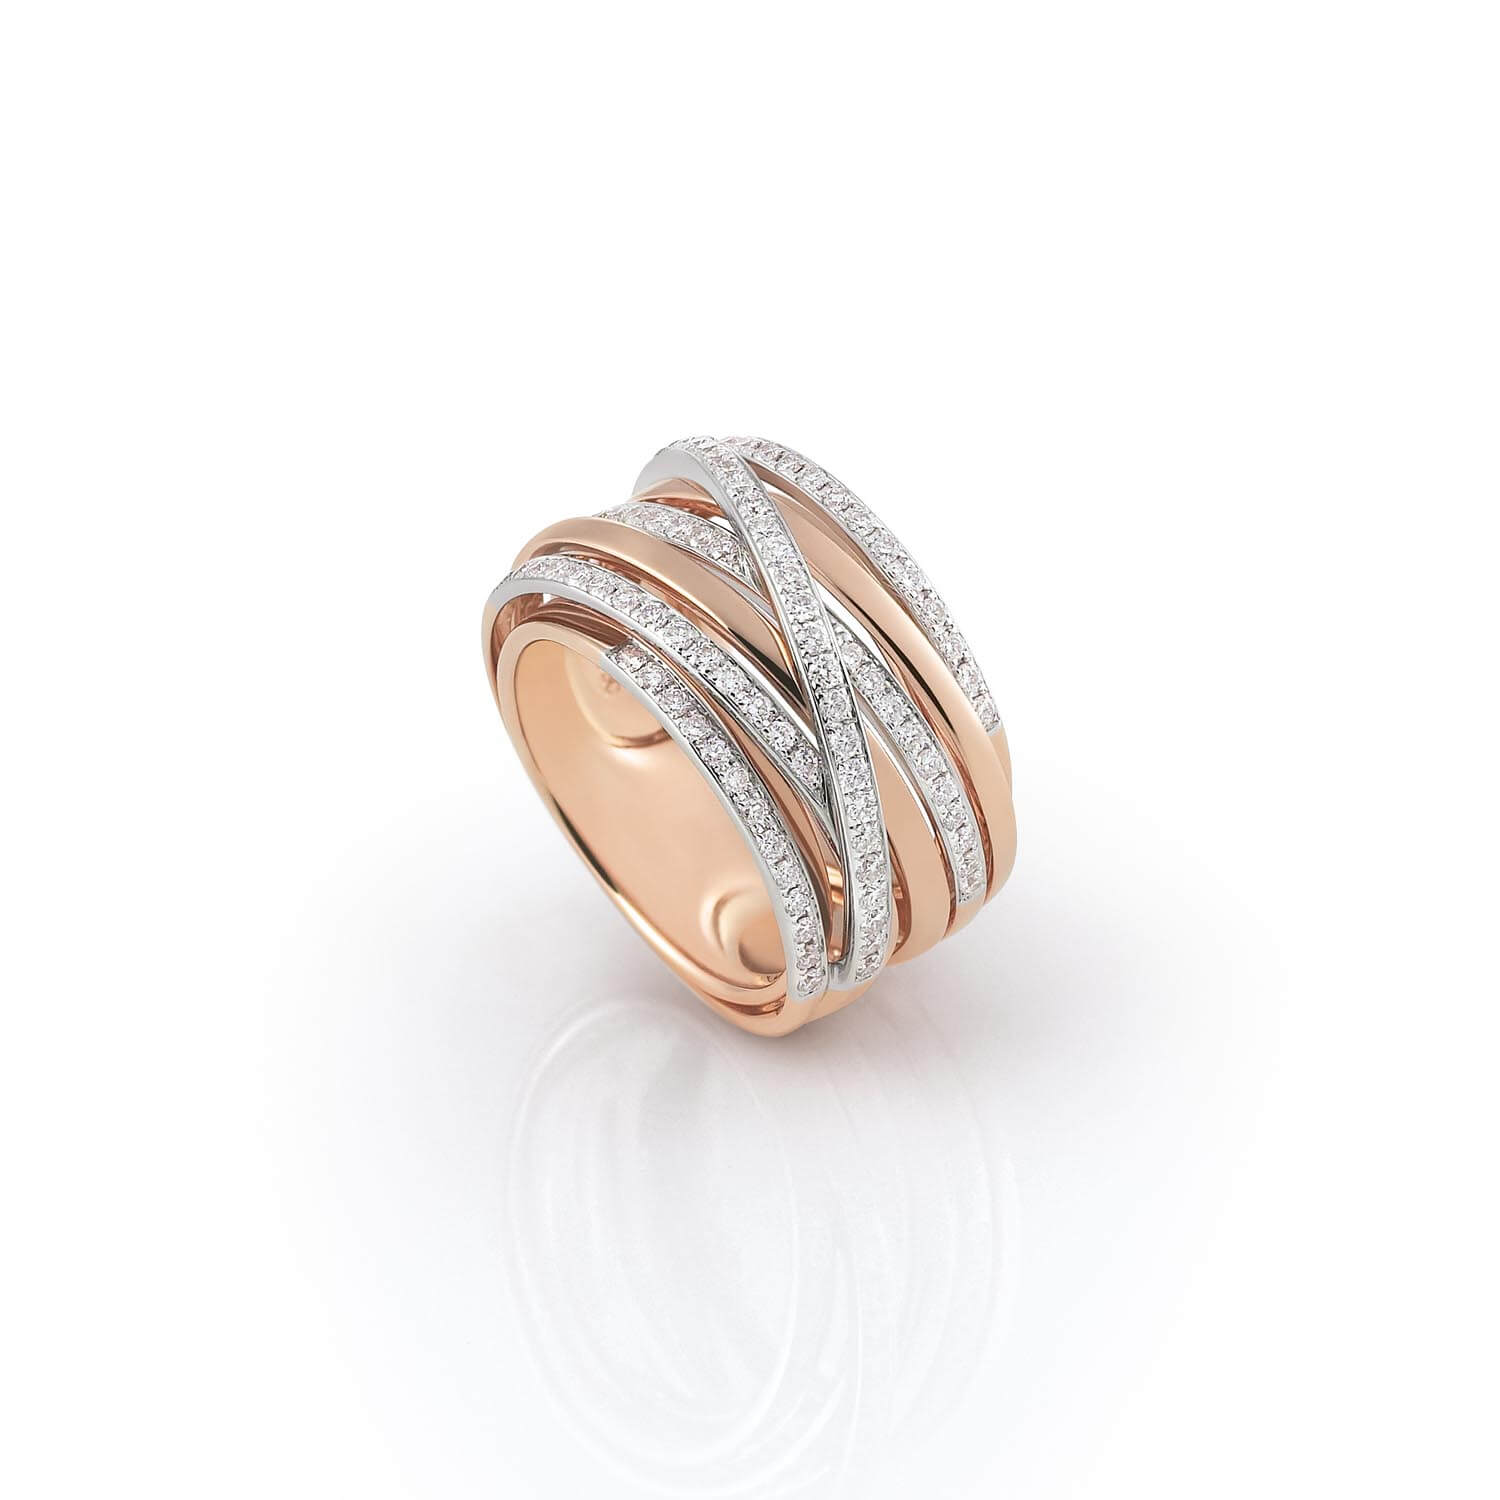 Al Coro Serenata Ring in 18k Rose Gold with Diamonds - Orsini Jewellers NZ